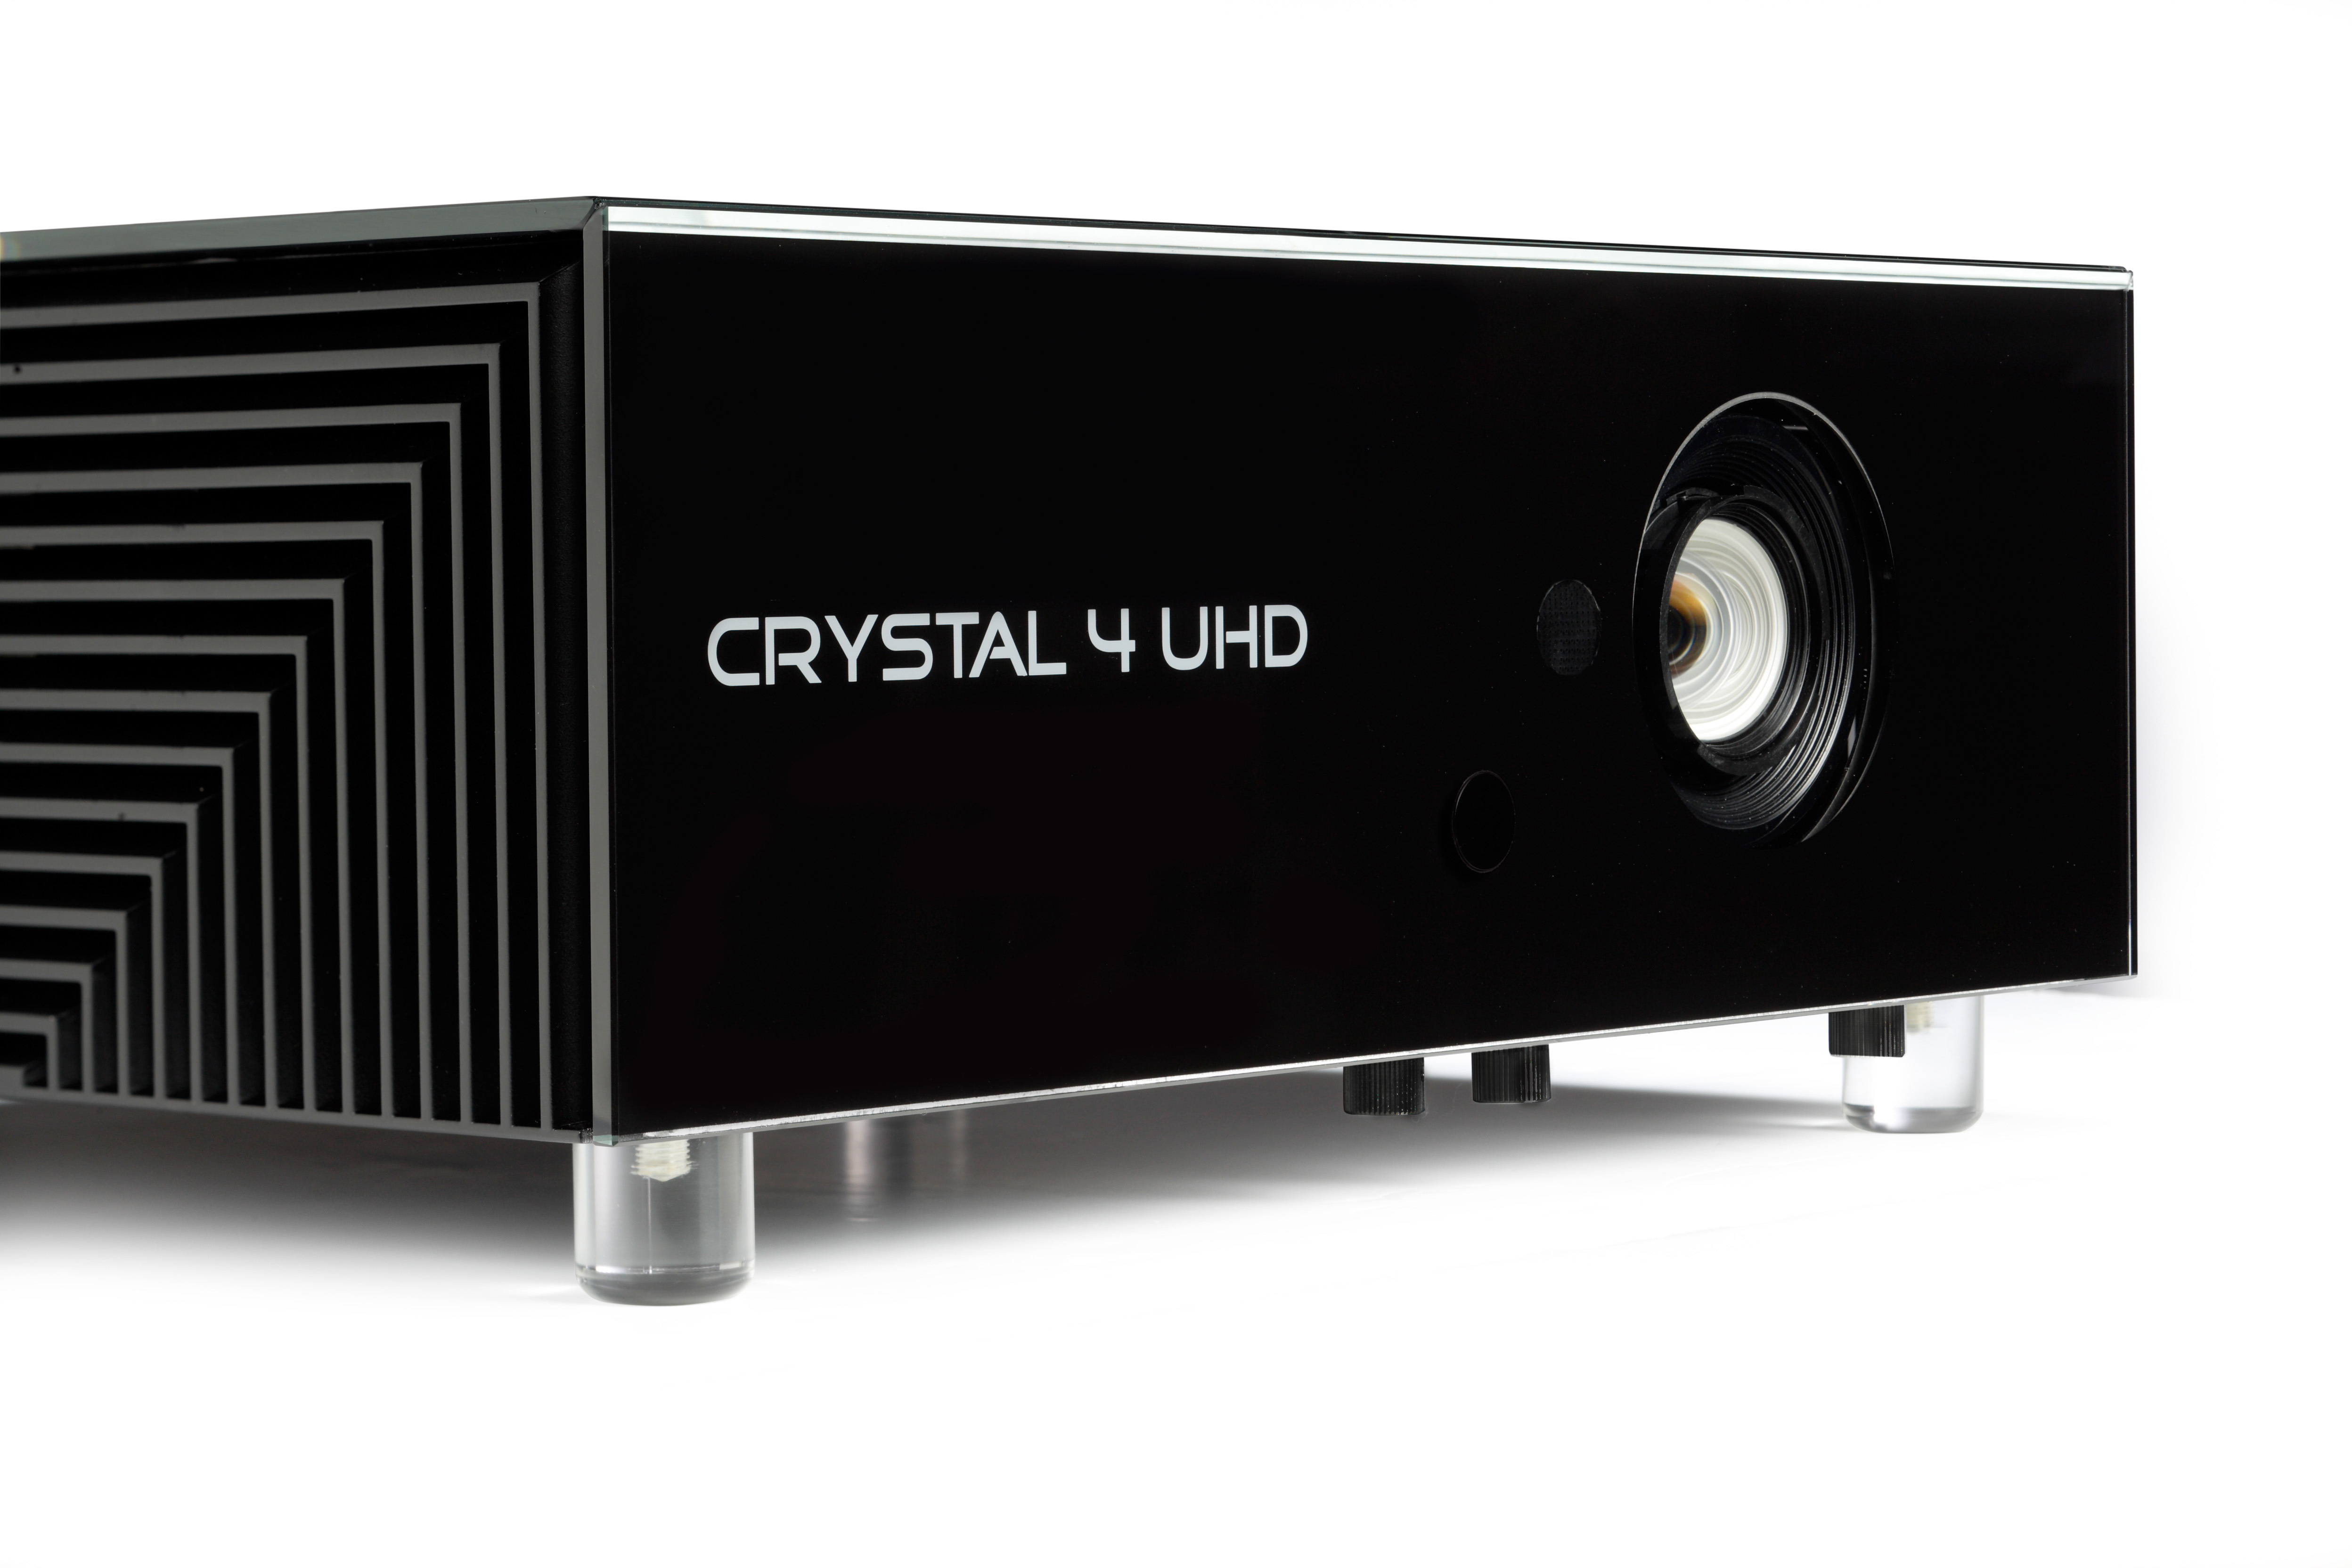 Crystal 4 - UHD HDR